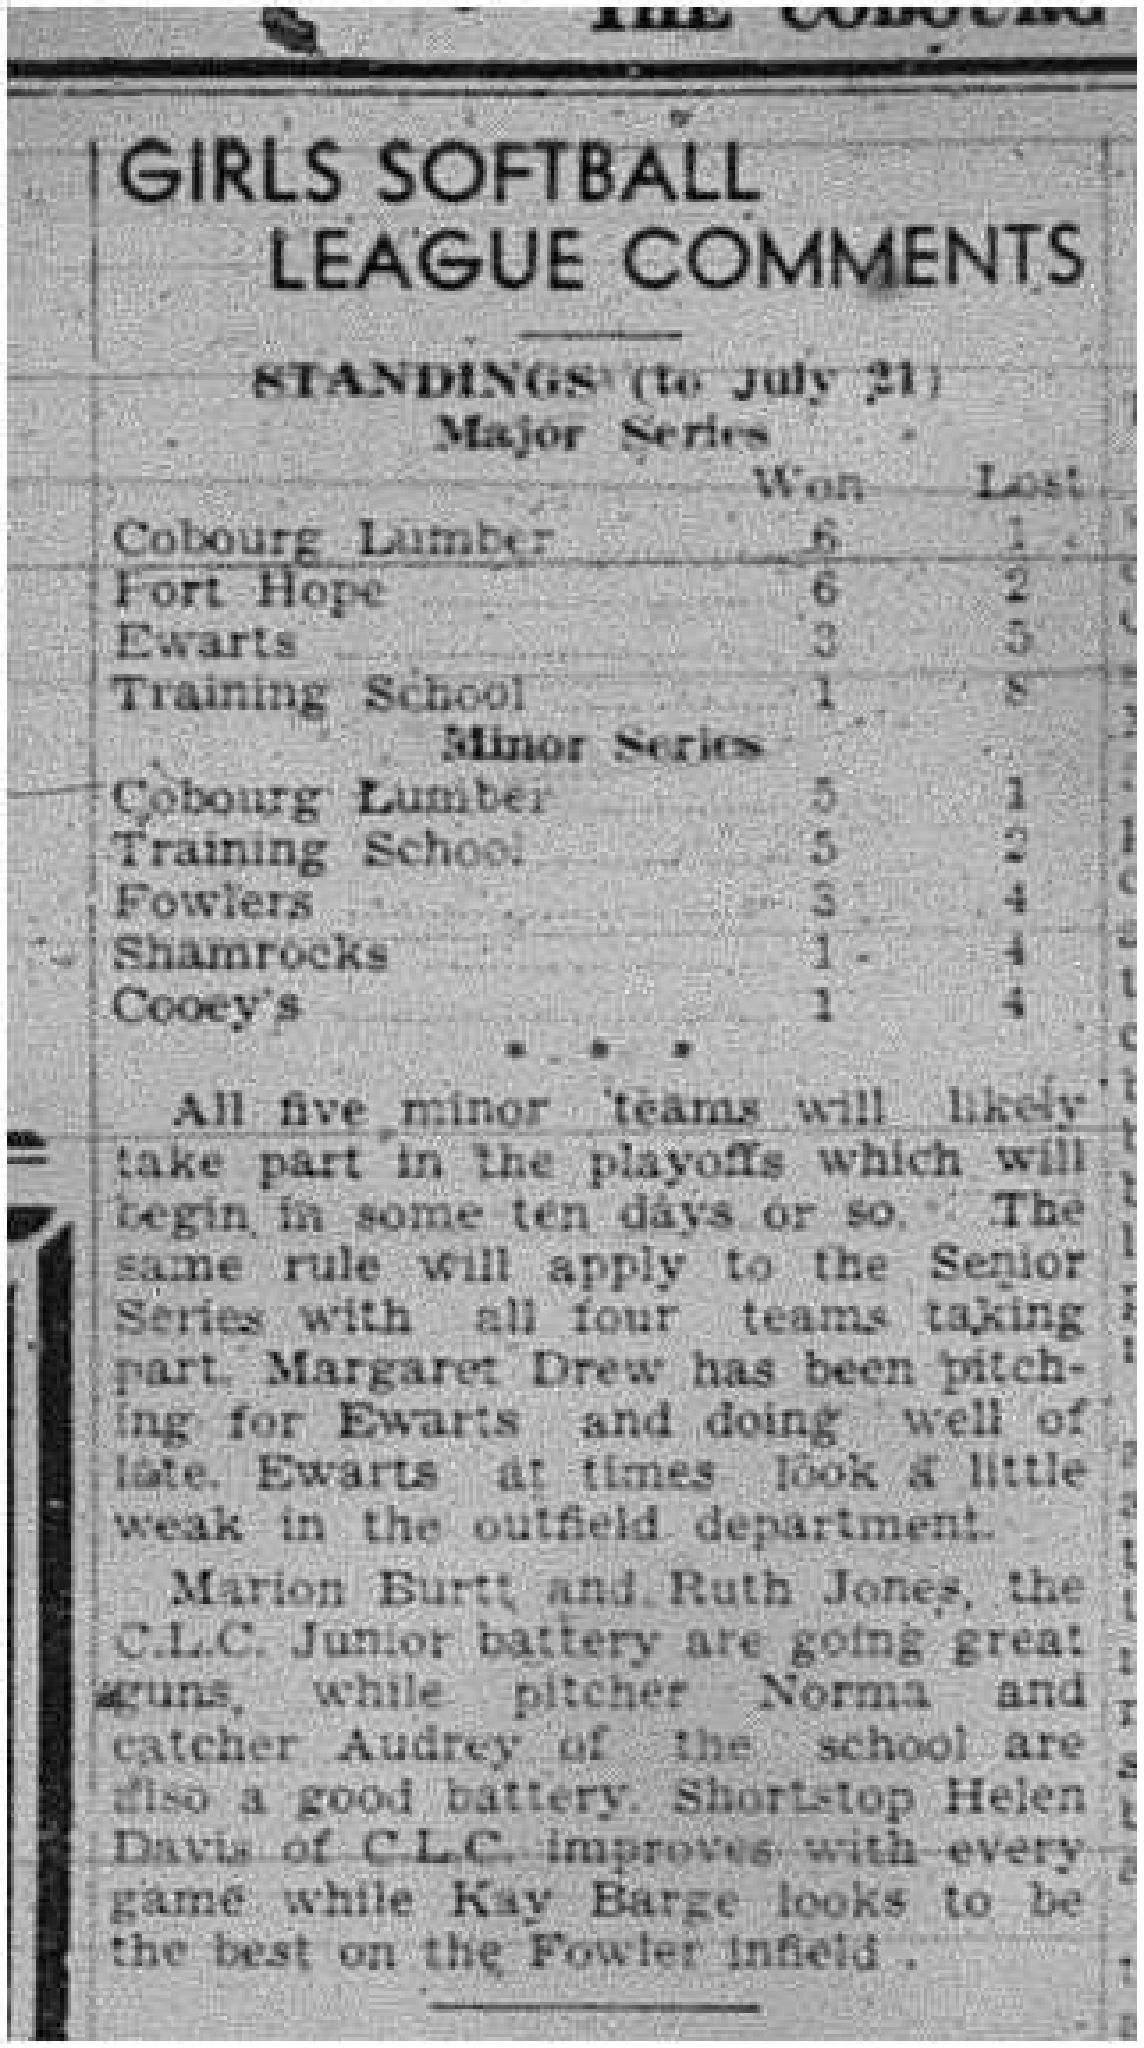 1945-07-26 Softball -Girls League standings